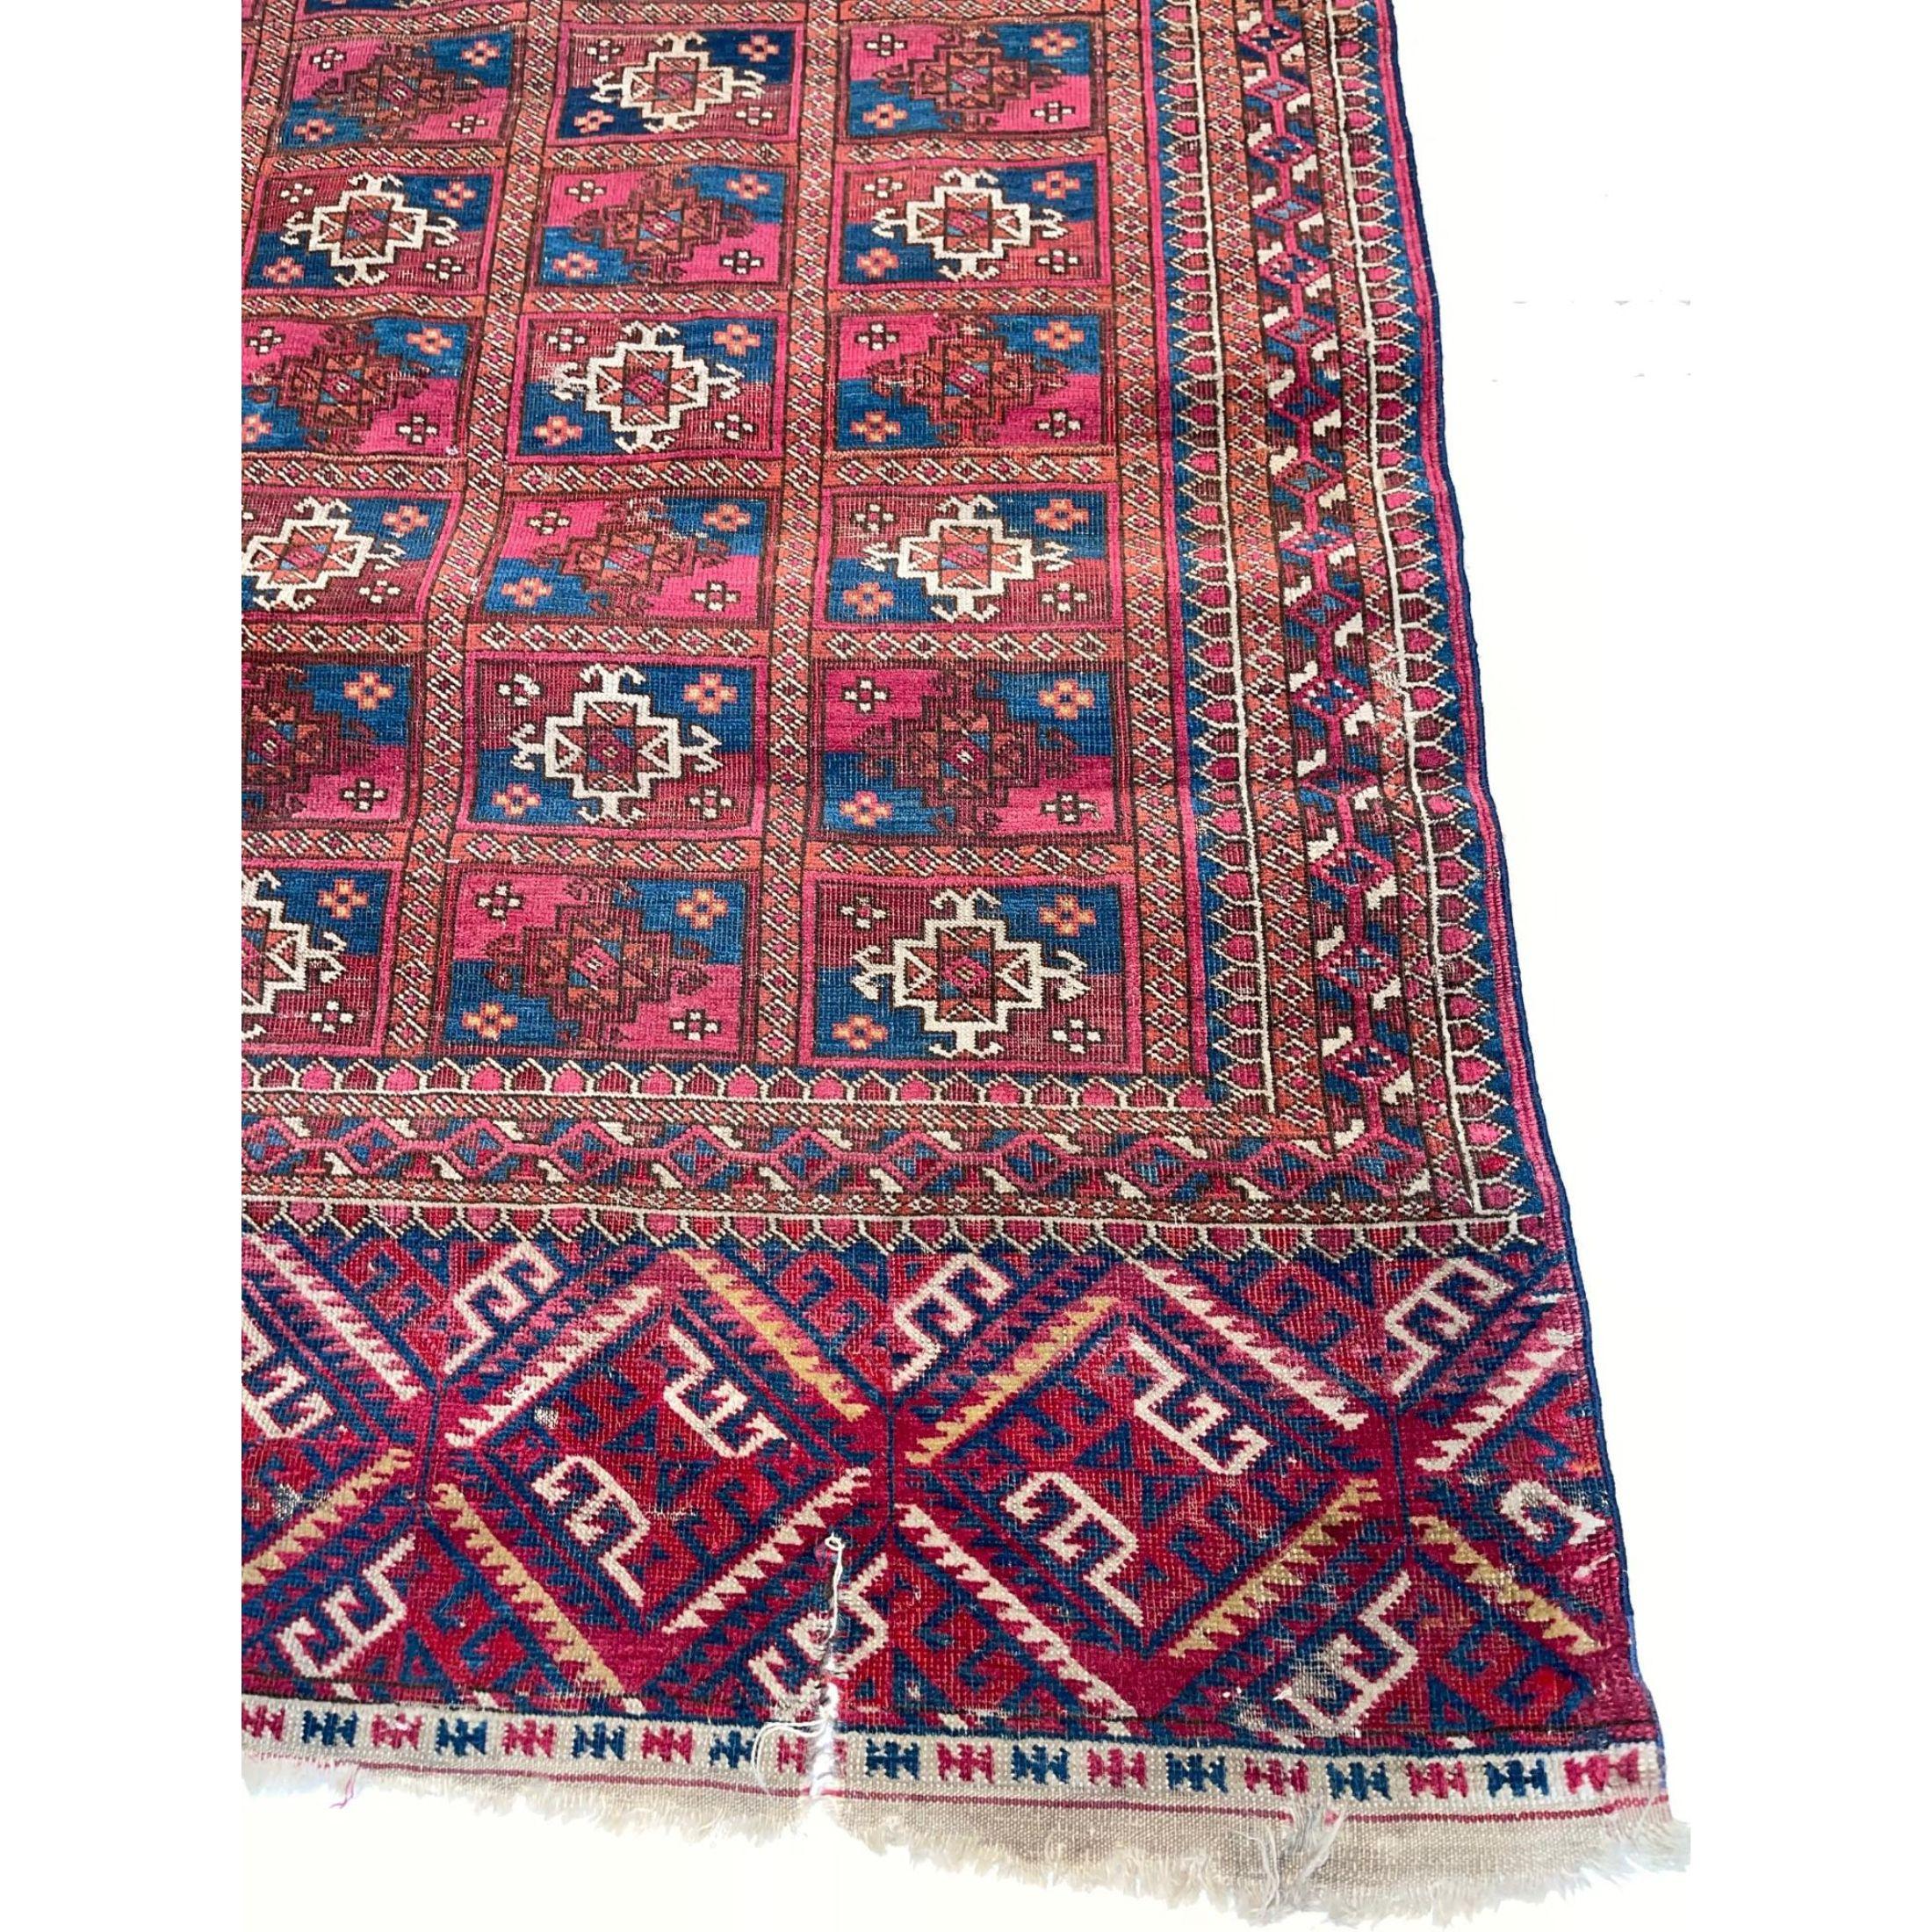 Tapis baloutches - Les tapis baloutches anciens constituent un phénomène unique dans le monde des tapis orientaux anciens. Plutôt que d'être originaires d'une région spécifique et facilement identifiable, les tapis baloutches sont en fait